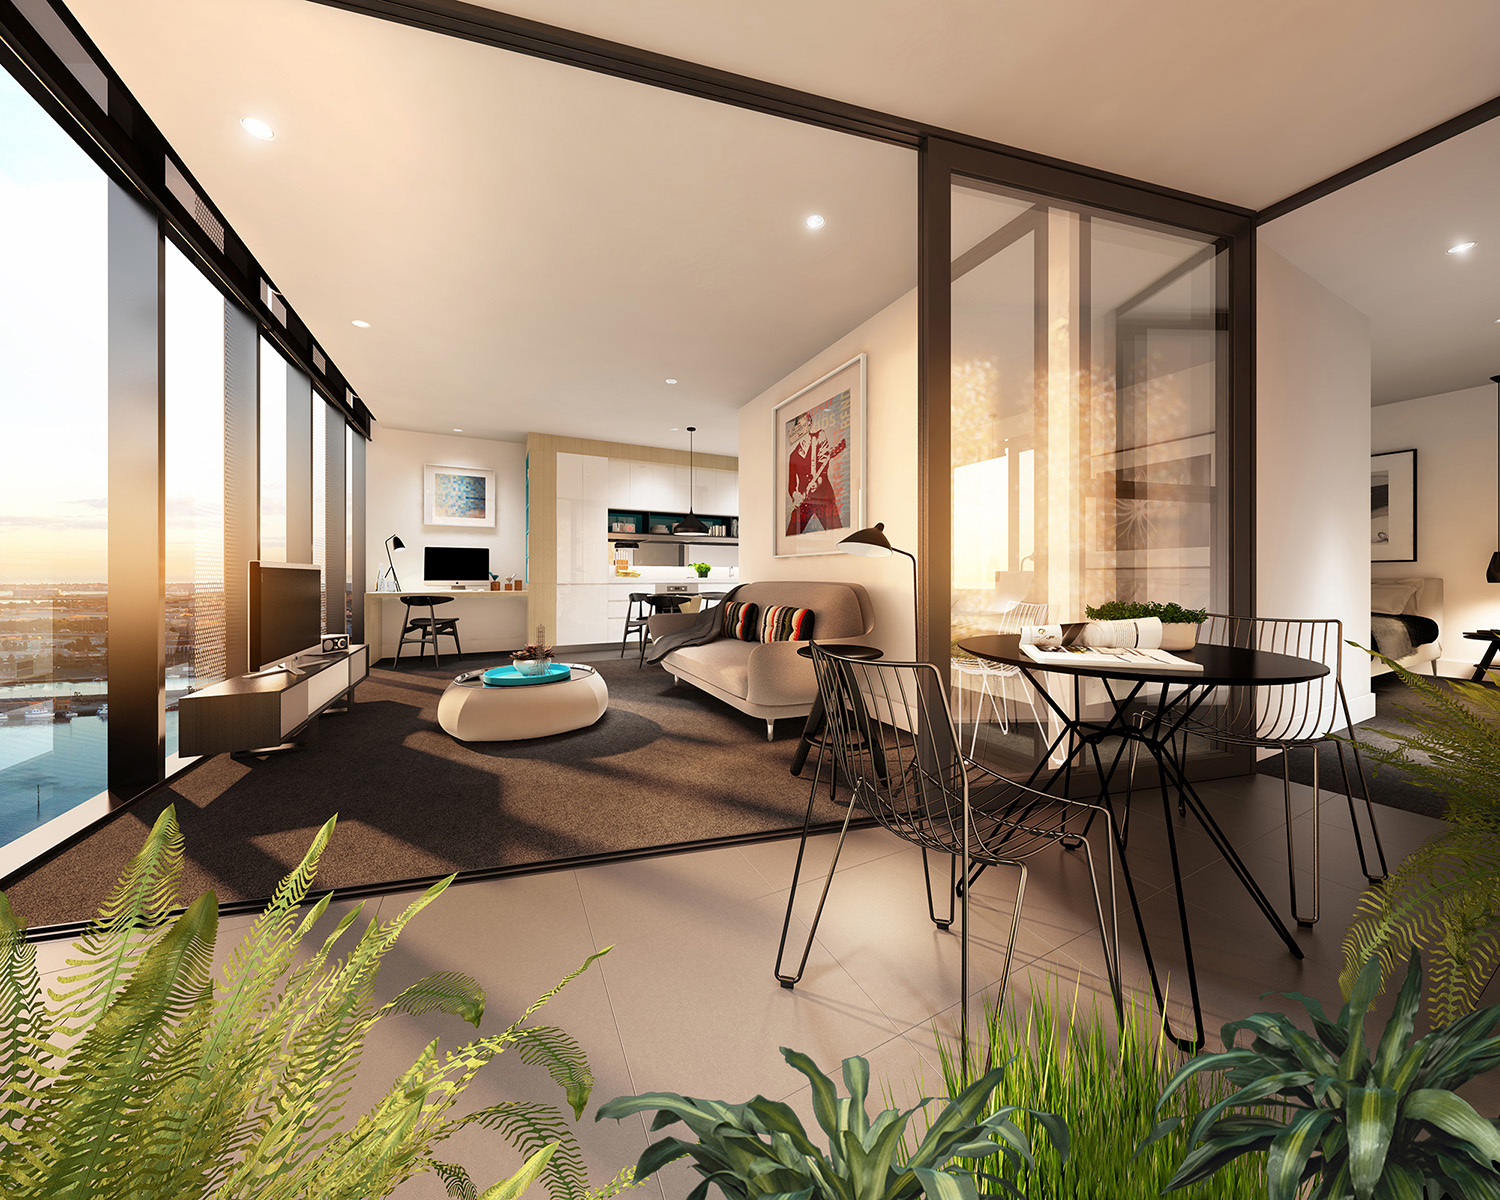 Studio Apartment Interiors Inspiration Architecture & Design